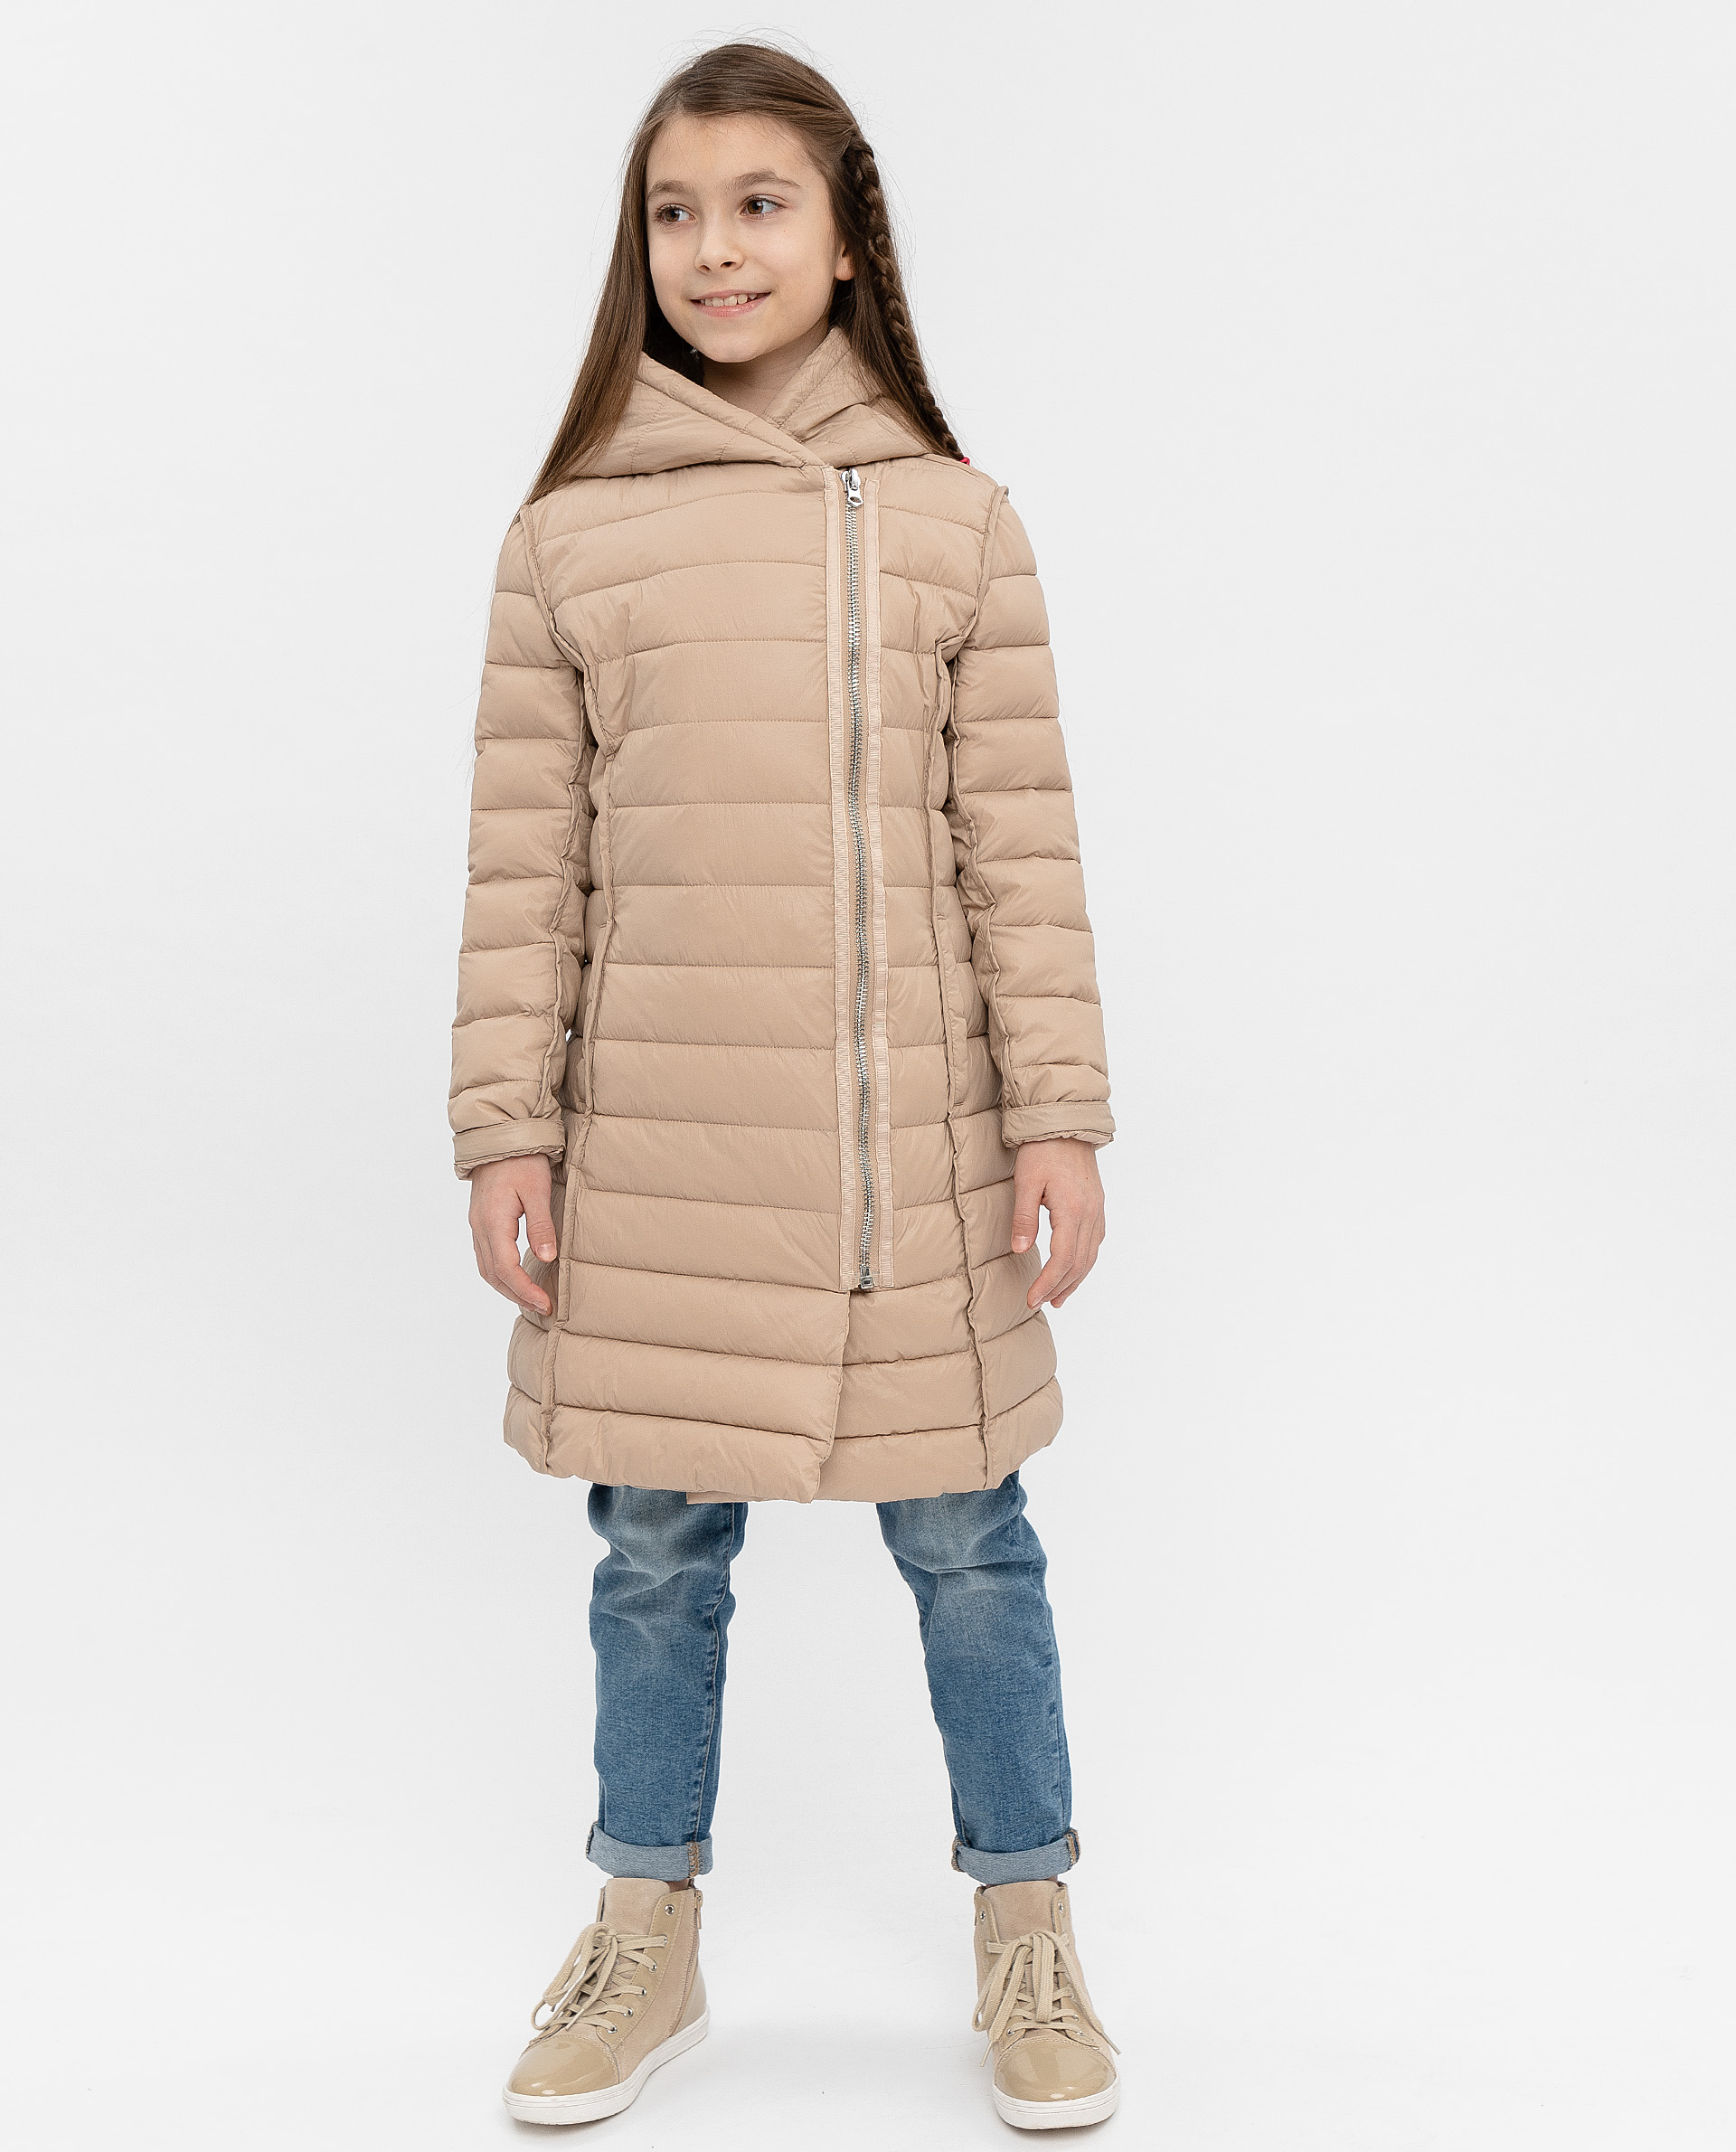 Бежевое демисезонное пальто Gulliver 12008GJC4501, размер 164, цвет бежевый - фото 2